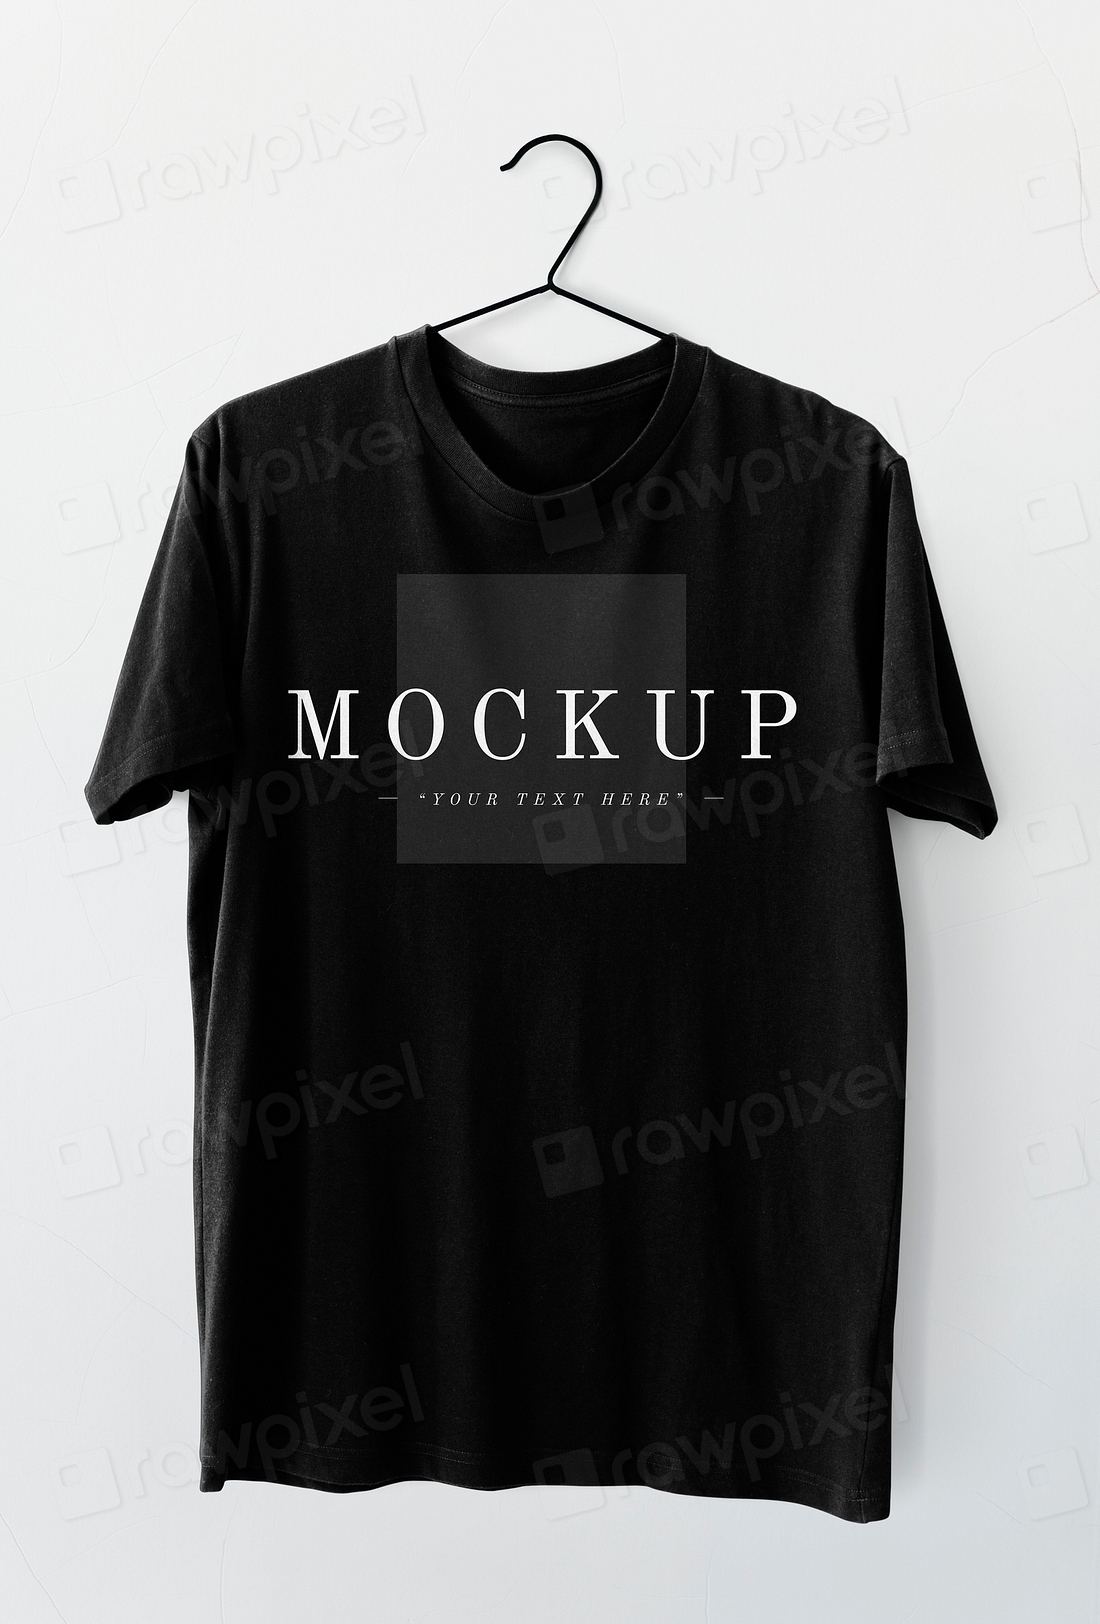 Simple black men's tee mockup | Premium PSD Mockup - rawpixel